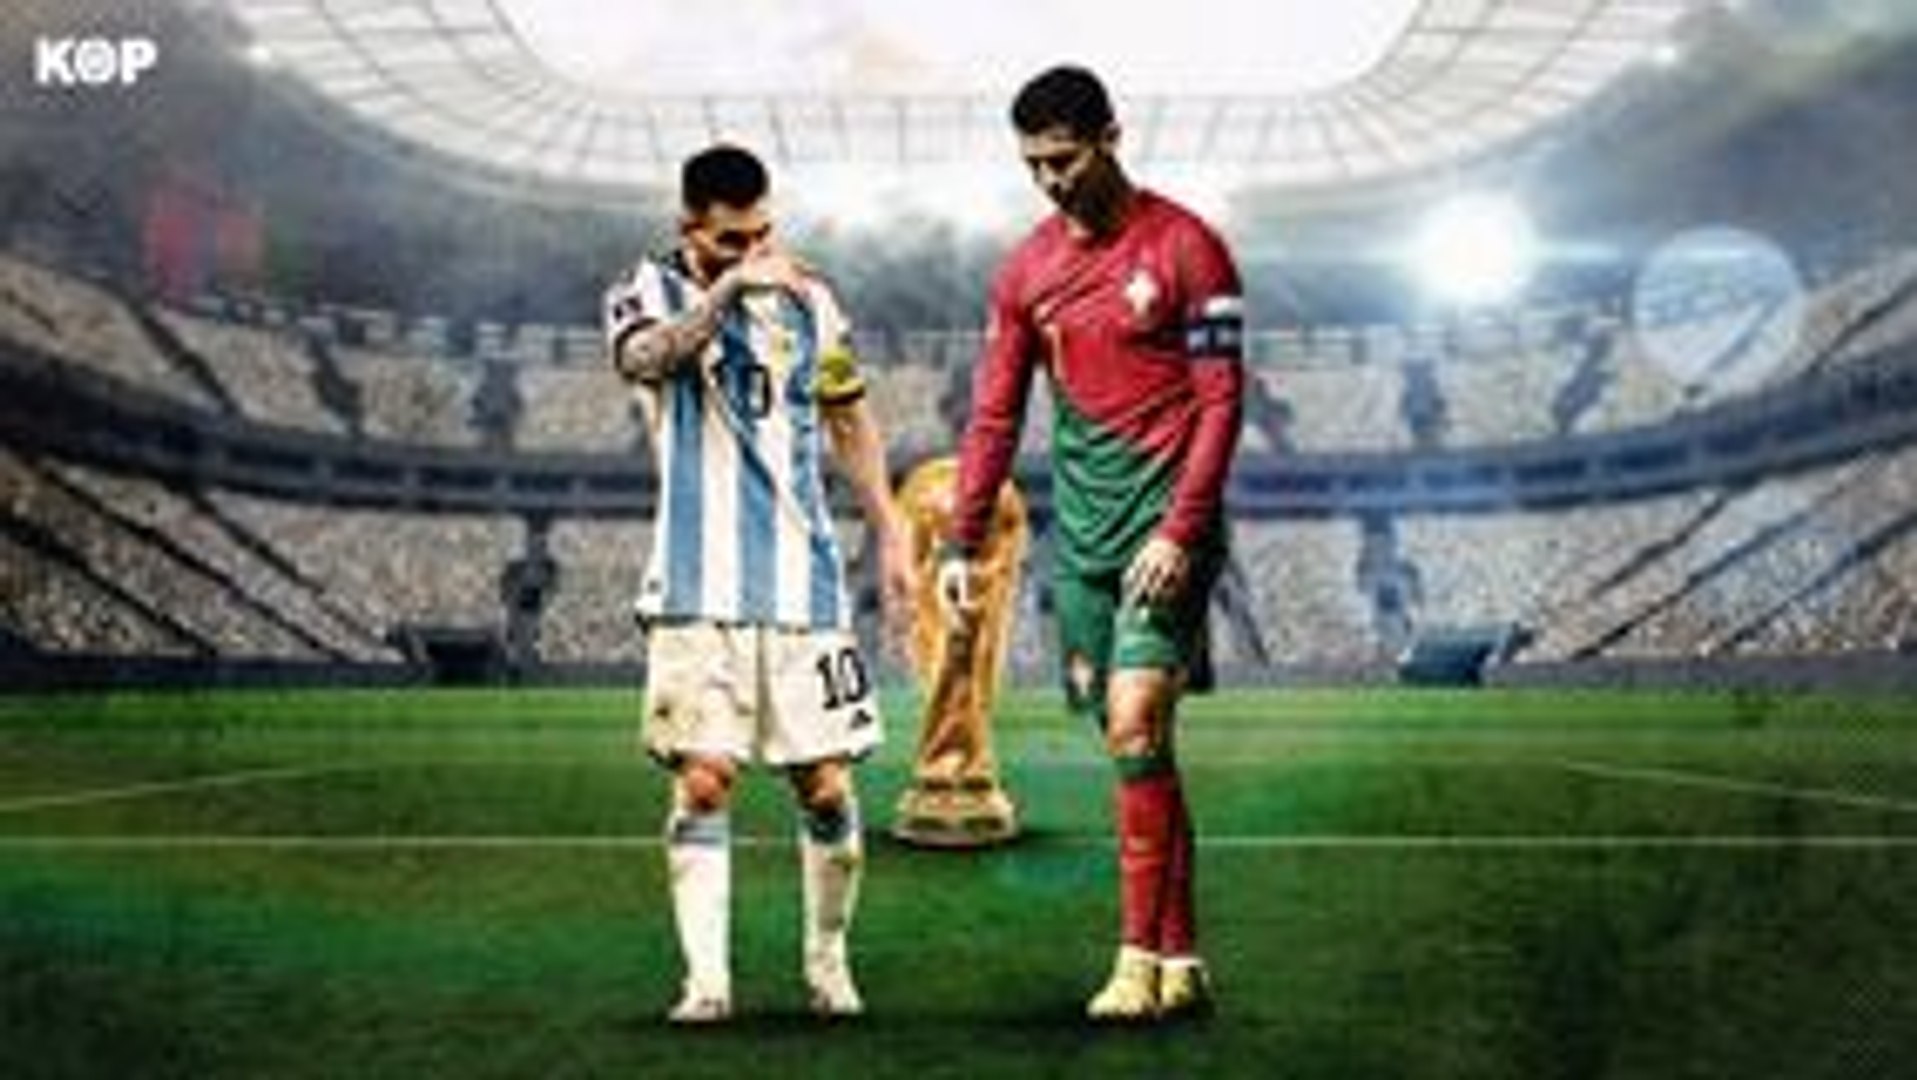 Coupe du monde : conflit avec Manchester, pub Louis Vuitton avec Messi  Ronaldo s'explique - Vidéo Dailymotion